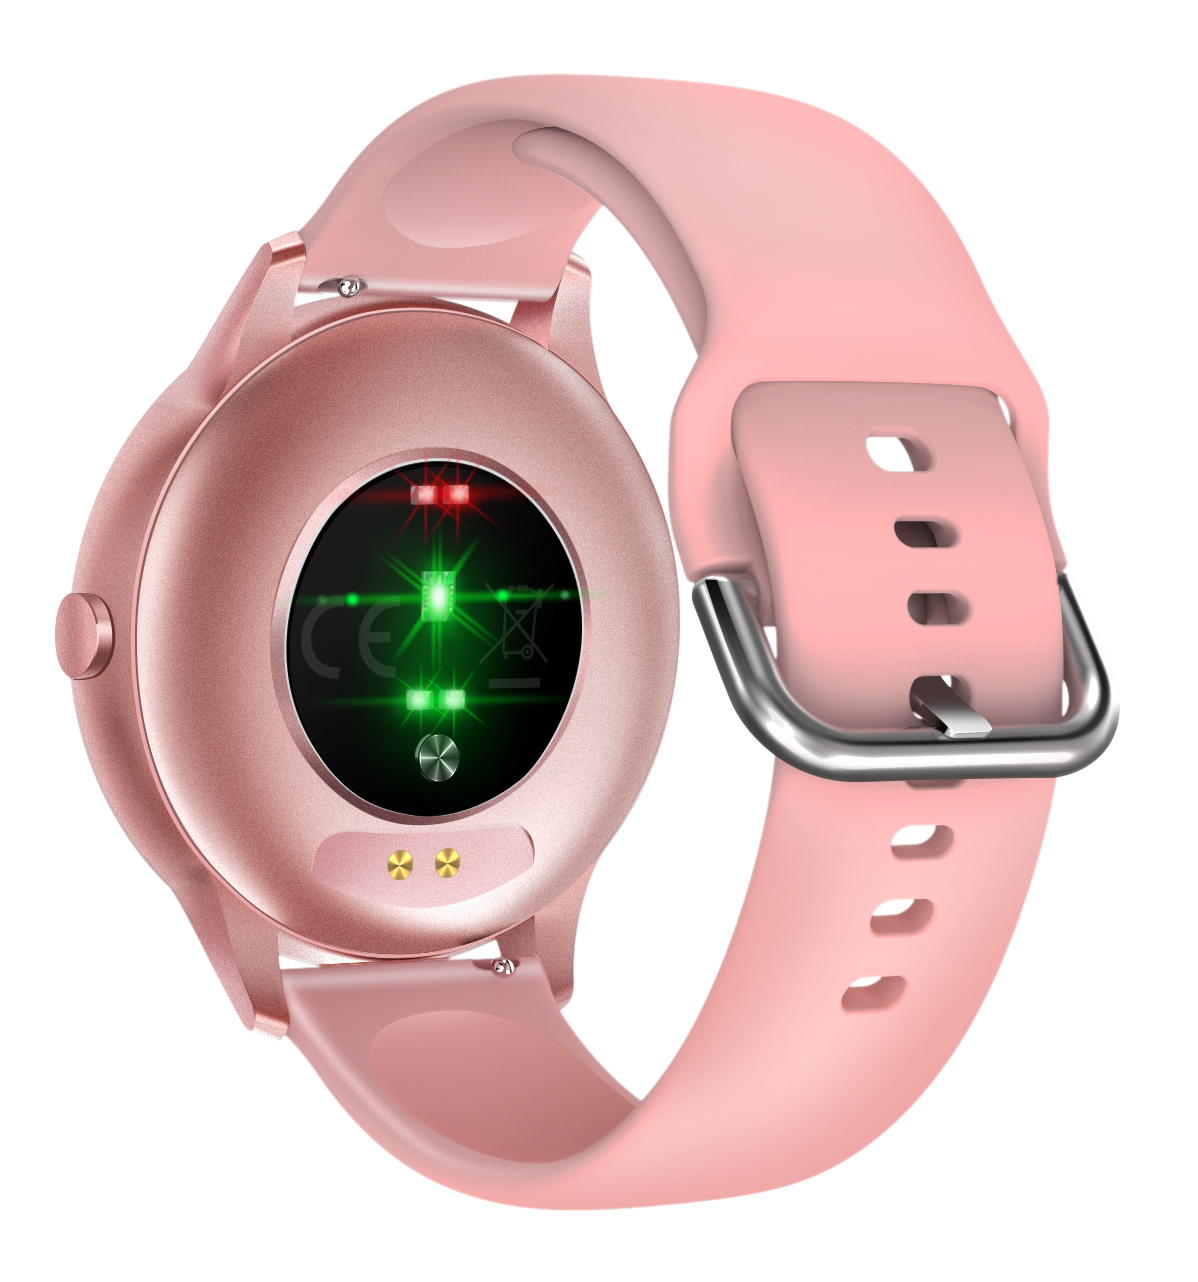 IP67 Waterproof Precise Heart Rate Monitor Smart Bracelet for Men Women 